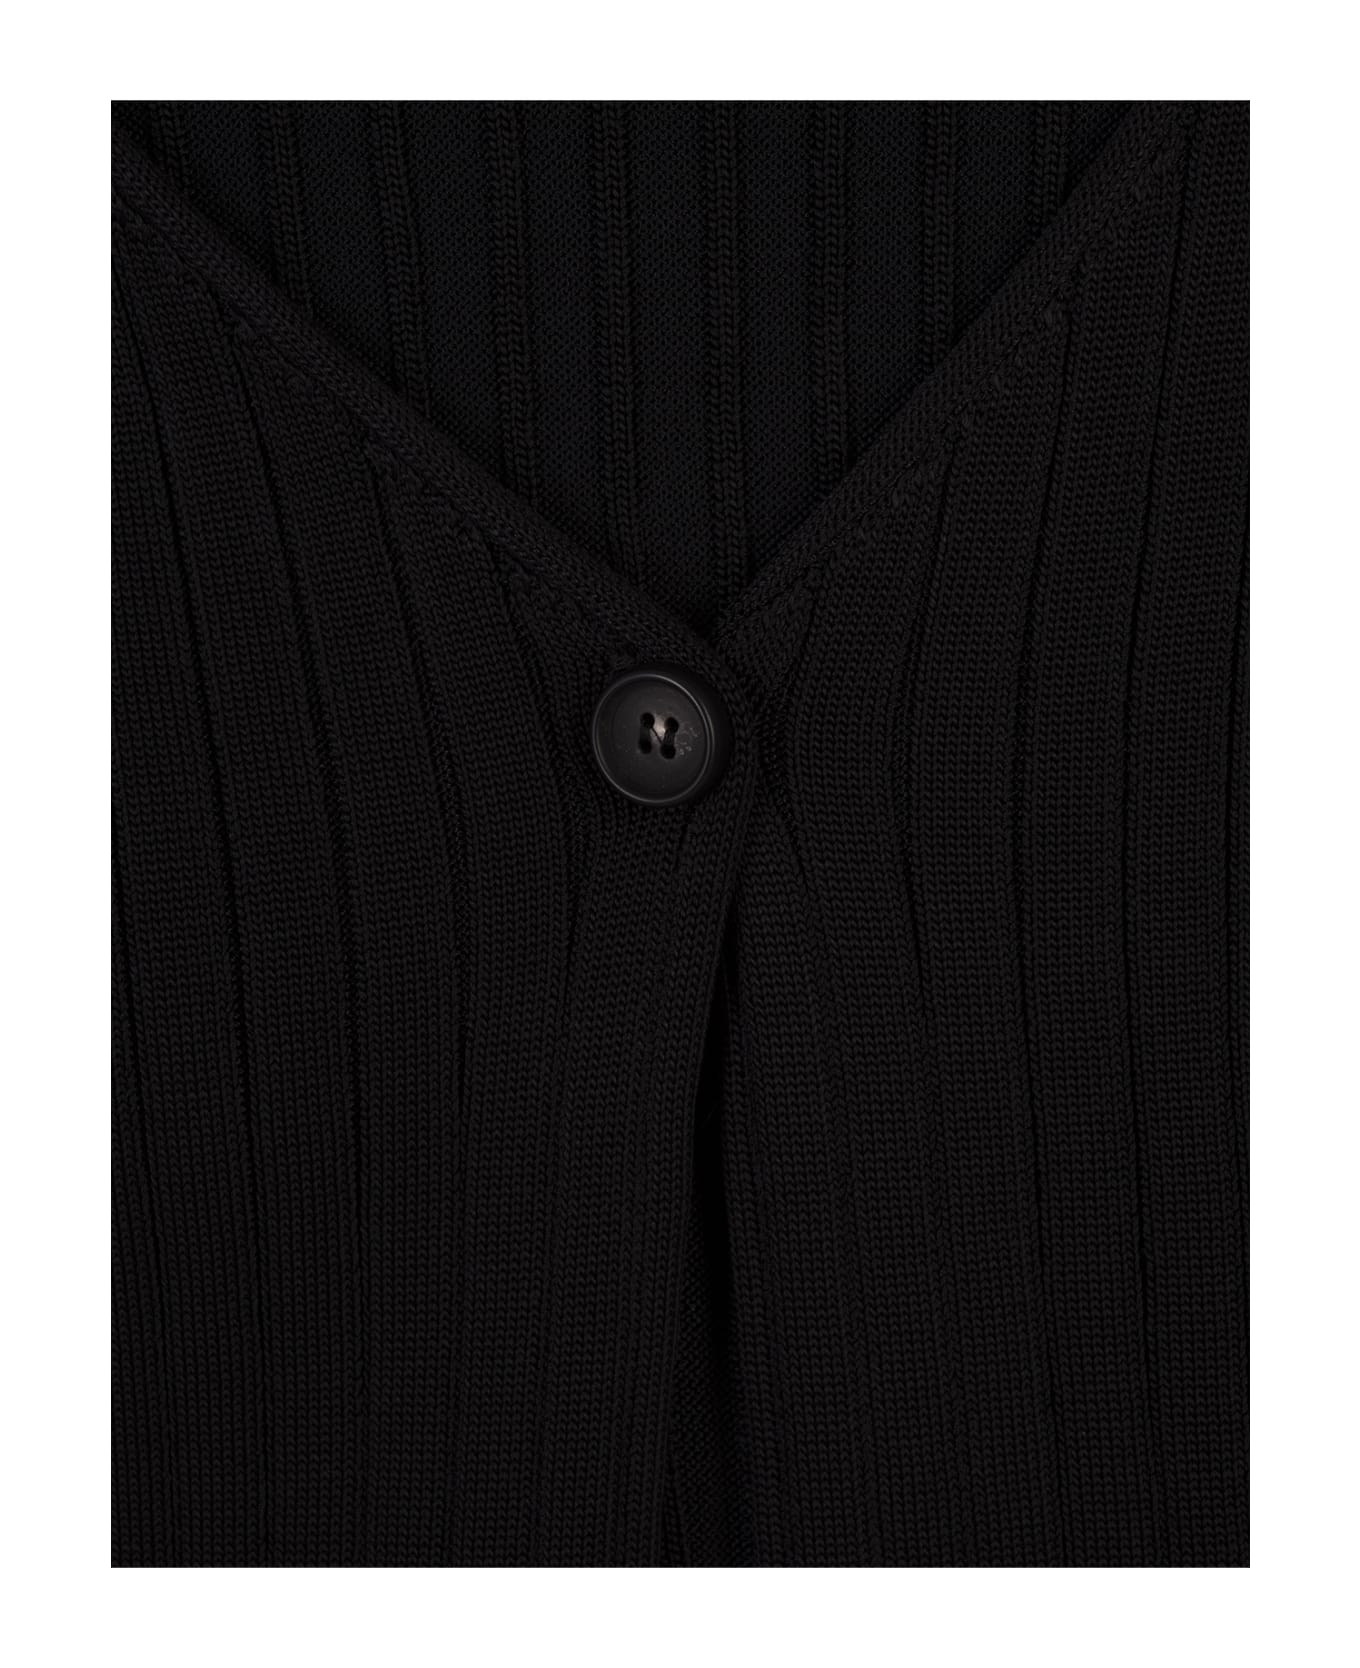 Marni Black Ribbed Knit Short Cardigan - Black カーディガン